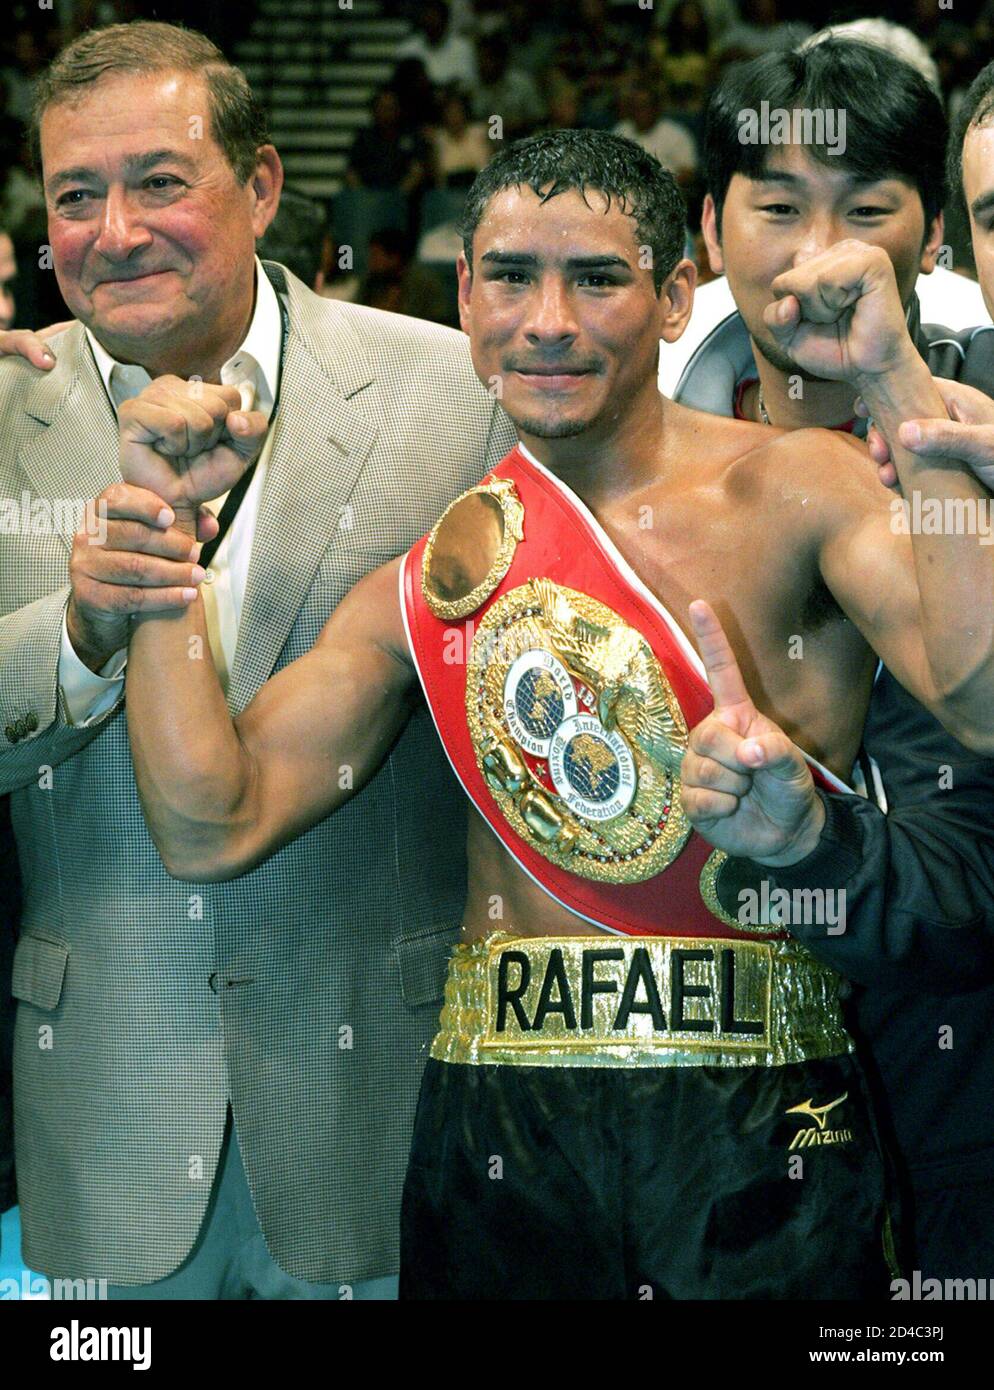 Rafael Marquez, champion de bantamweight de la FIBF, de Mexico, pose avec le promoteur de boxe Bob Arum (L) après avoir battu [Heriberto Ruiz de Los Mochis], Mexique à la MGM Grand Garden Arena à Las Vegas, Nevada, le 31 juillet 2004. Marquez a conservé son titre au troisième tour. Banque D'Images